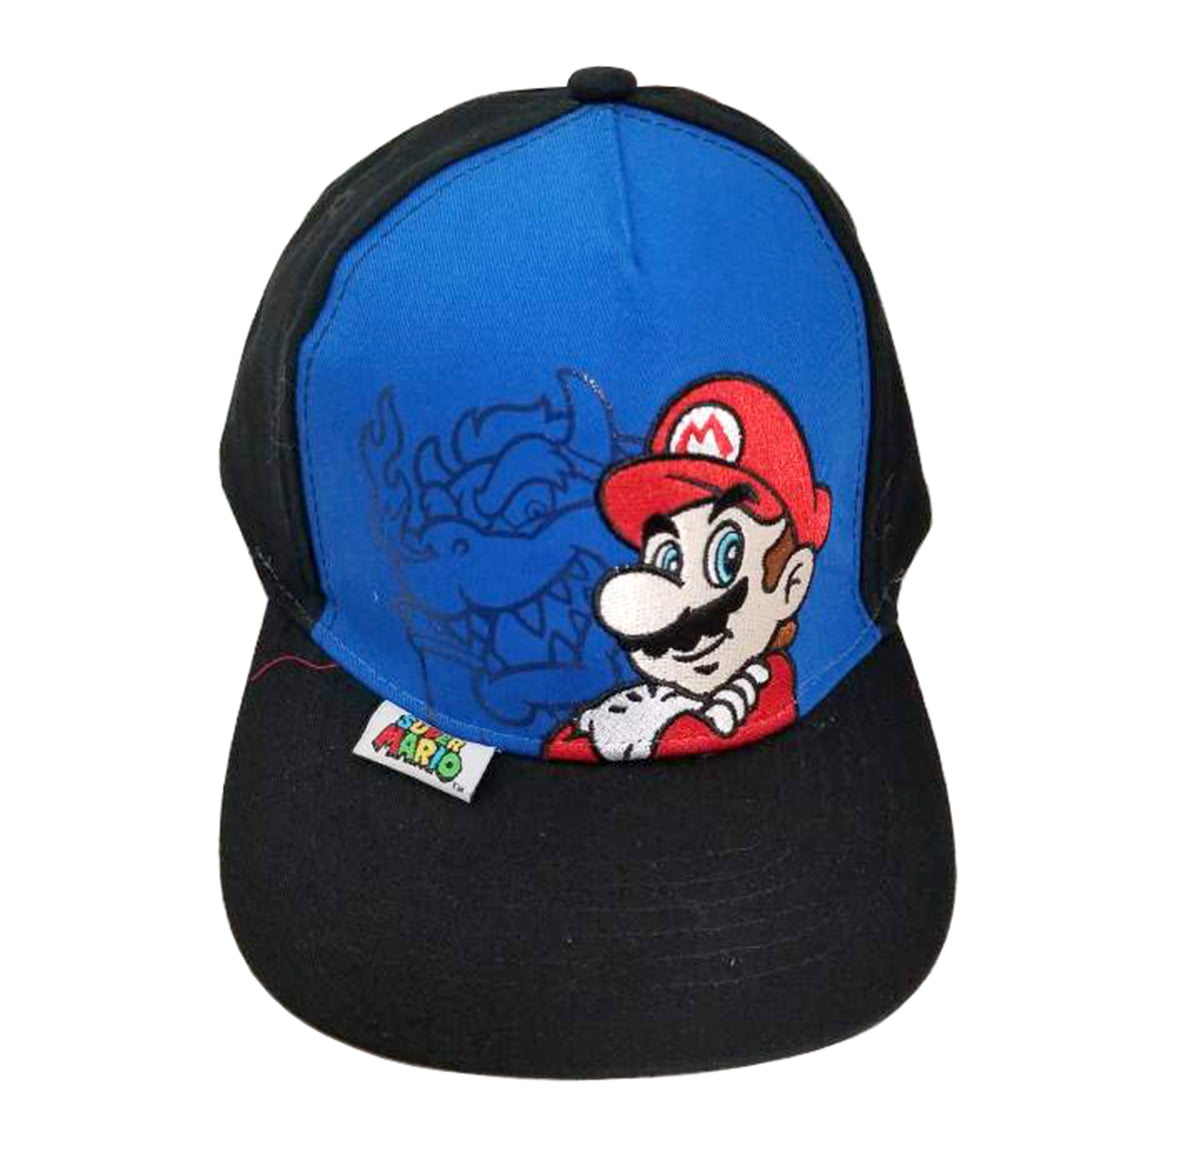 ABG Accessories Super Mario Boys Baseball Cap Toddler